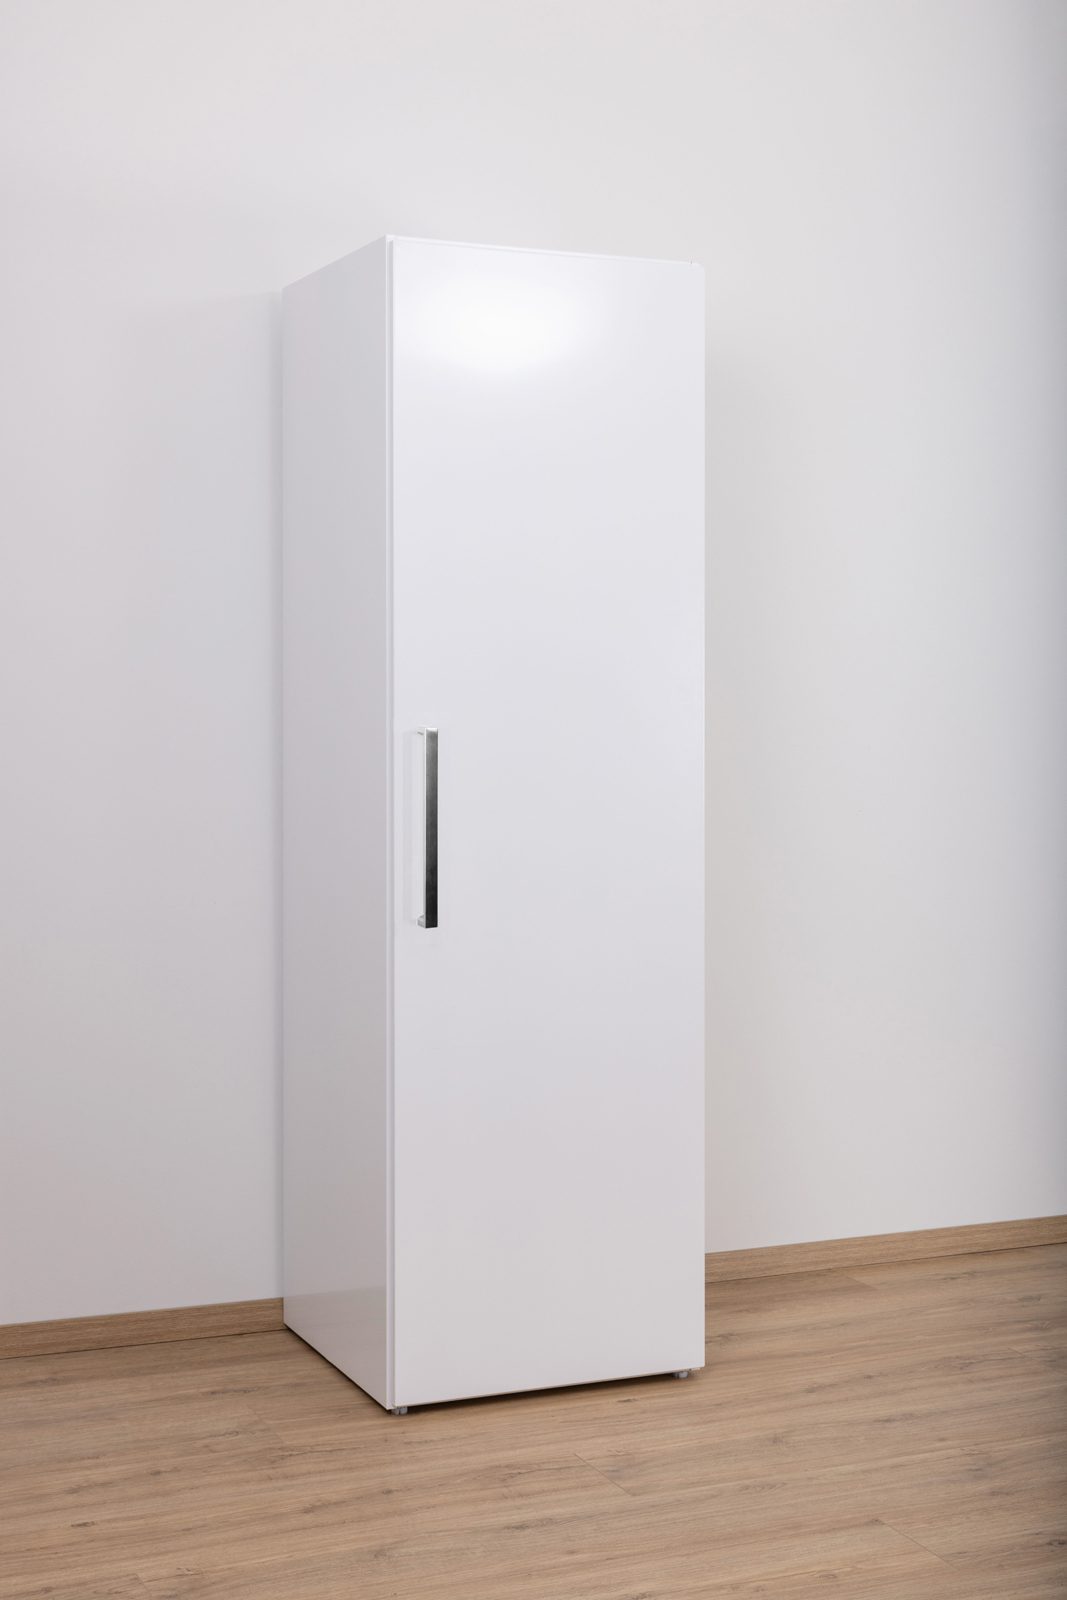 Een witte koelkast in een lege keuken op het werk.